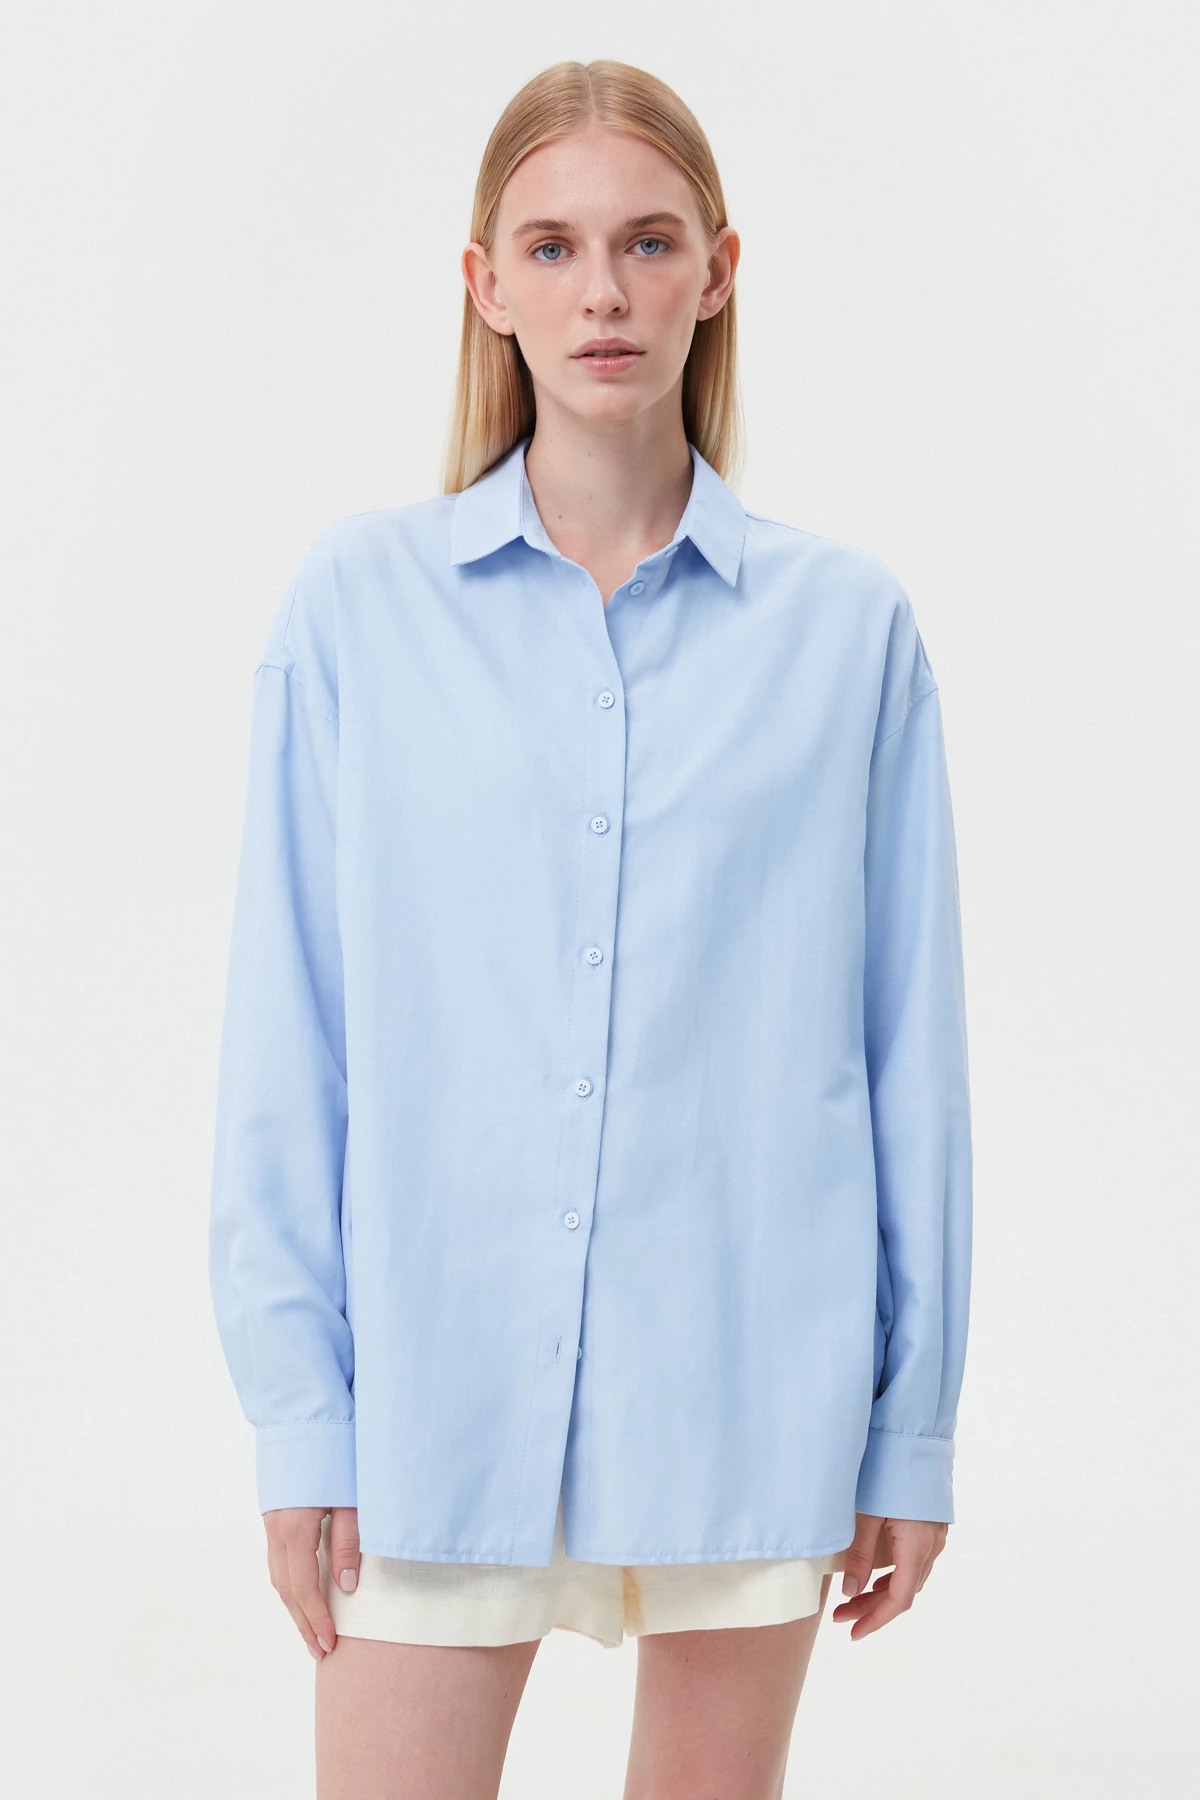 Loose-fit blue cotton shirt, photo 1